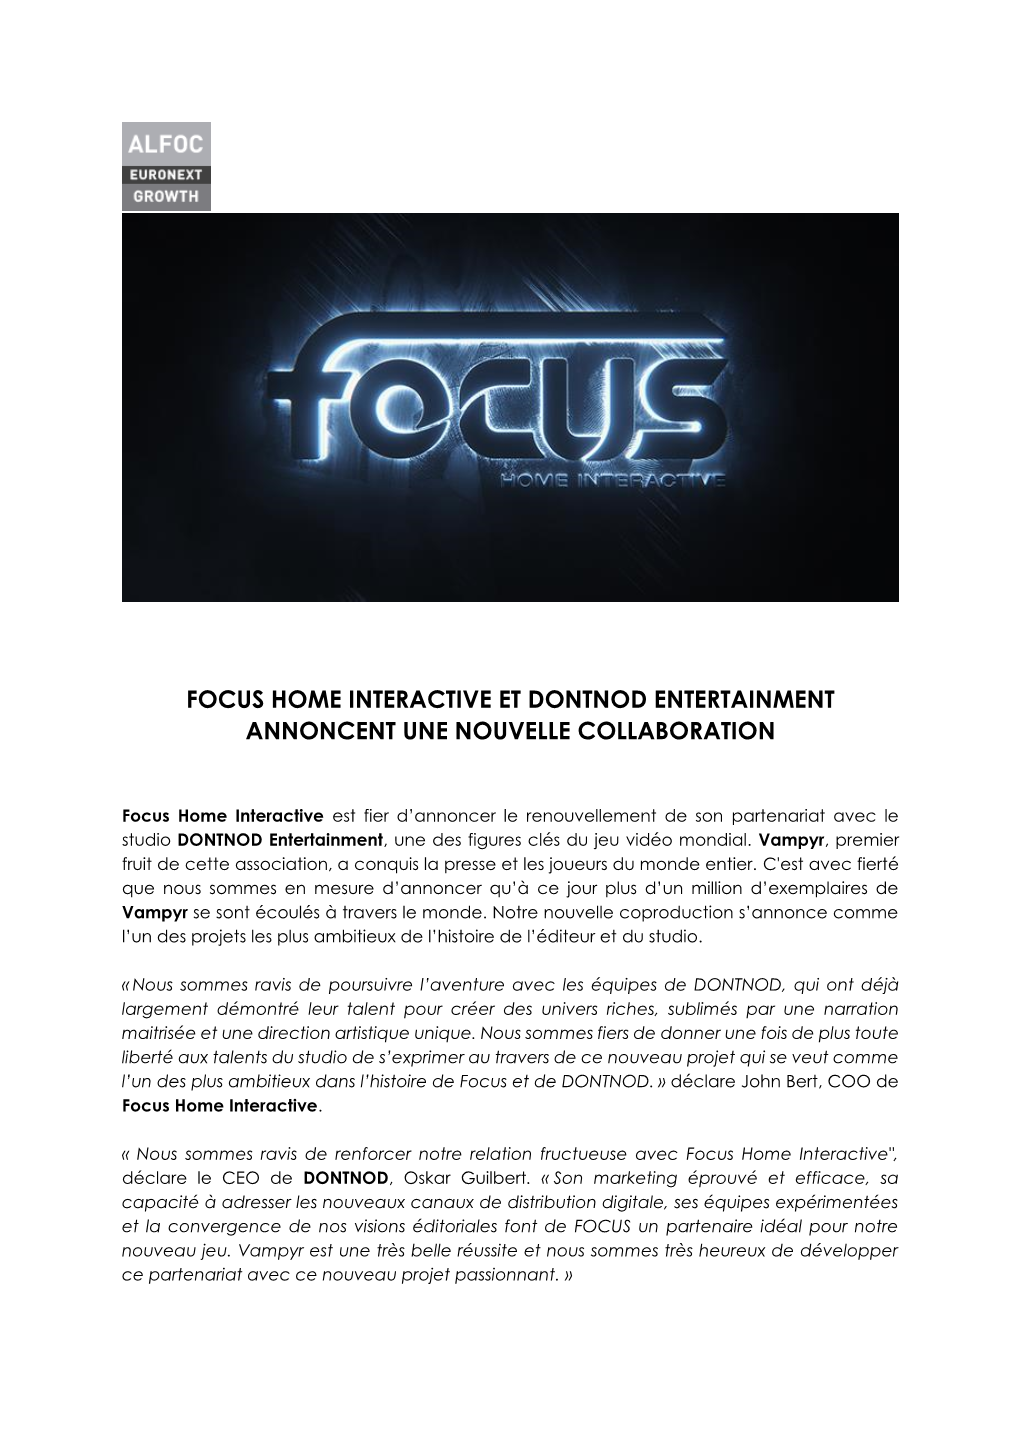 Focus Home Interactive Et Dontnod Entertainment Annoncent Une Nouvelle Collaboration